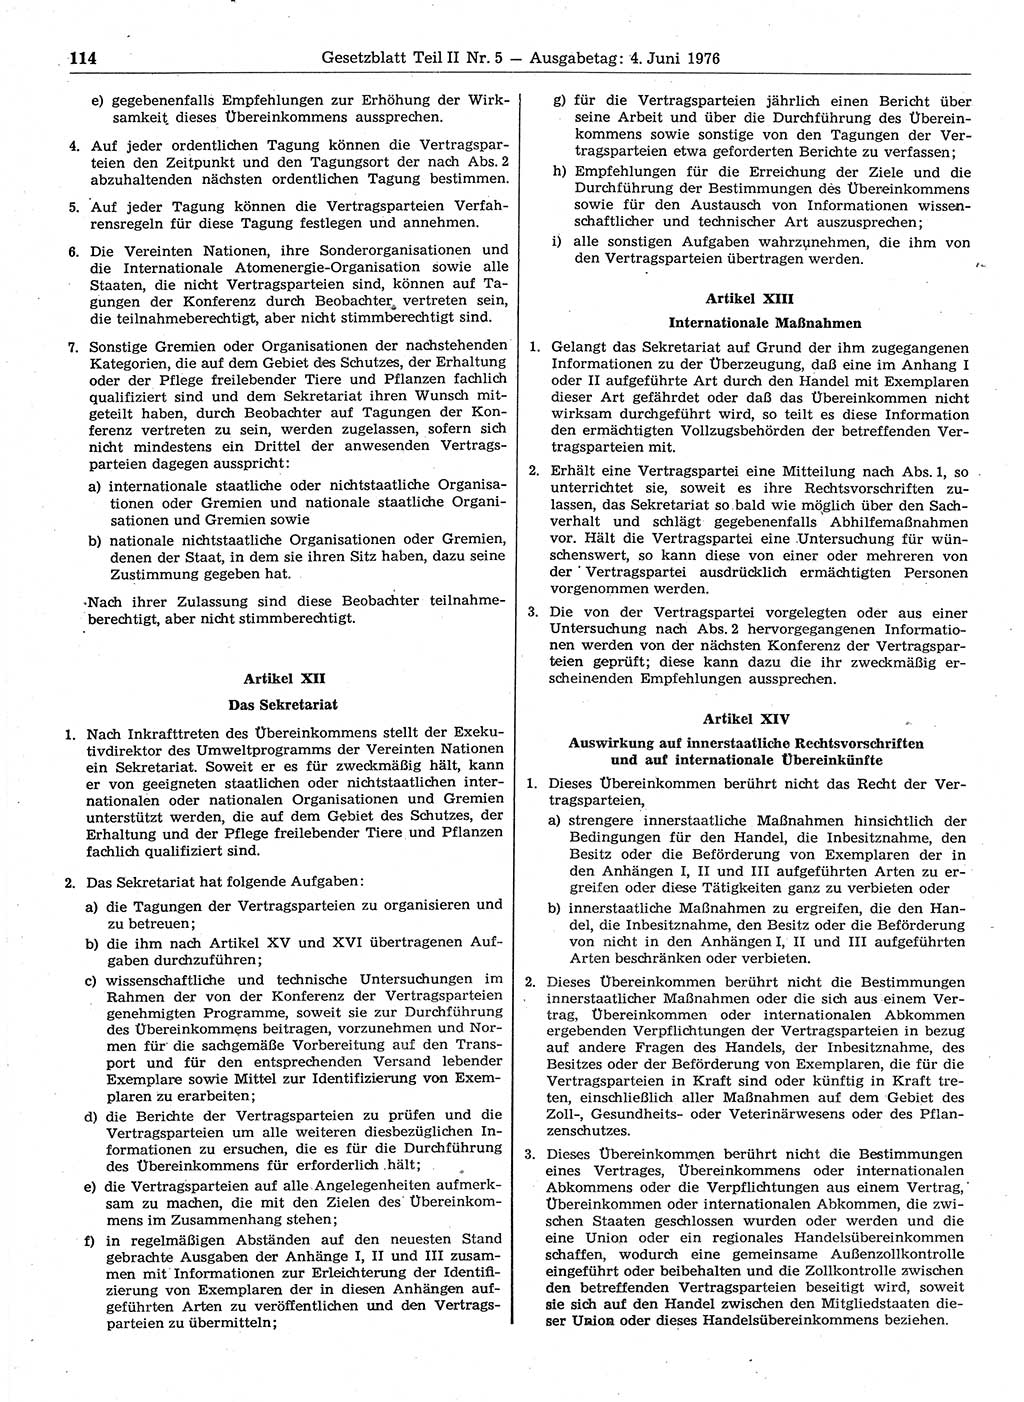 Gesetzblatt (GBl.) der Deutschen Demokratischen Republik (DDR) Teil ⅠⅠ 1976, Seite 114 (GBl. DDR ⅠⅠ 1976, S. 114)